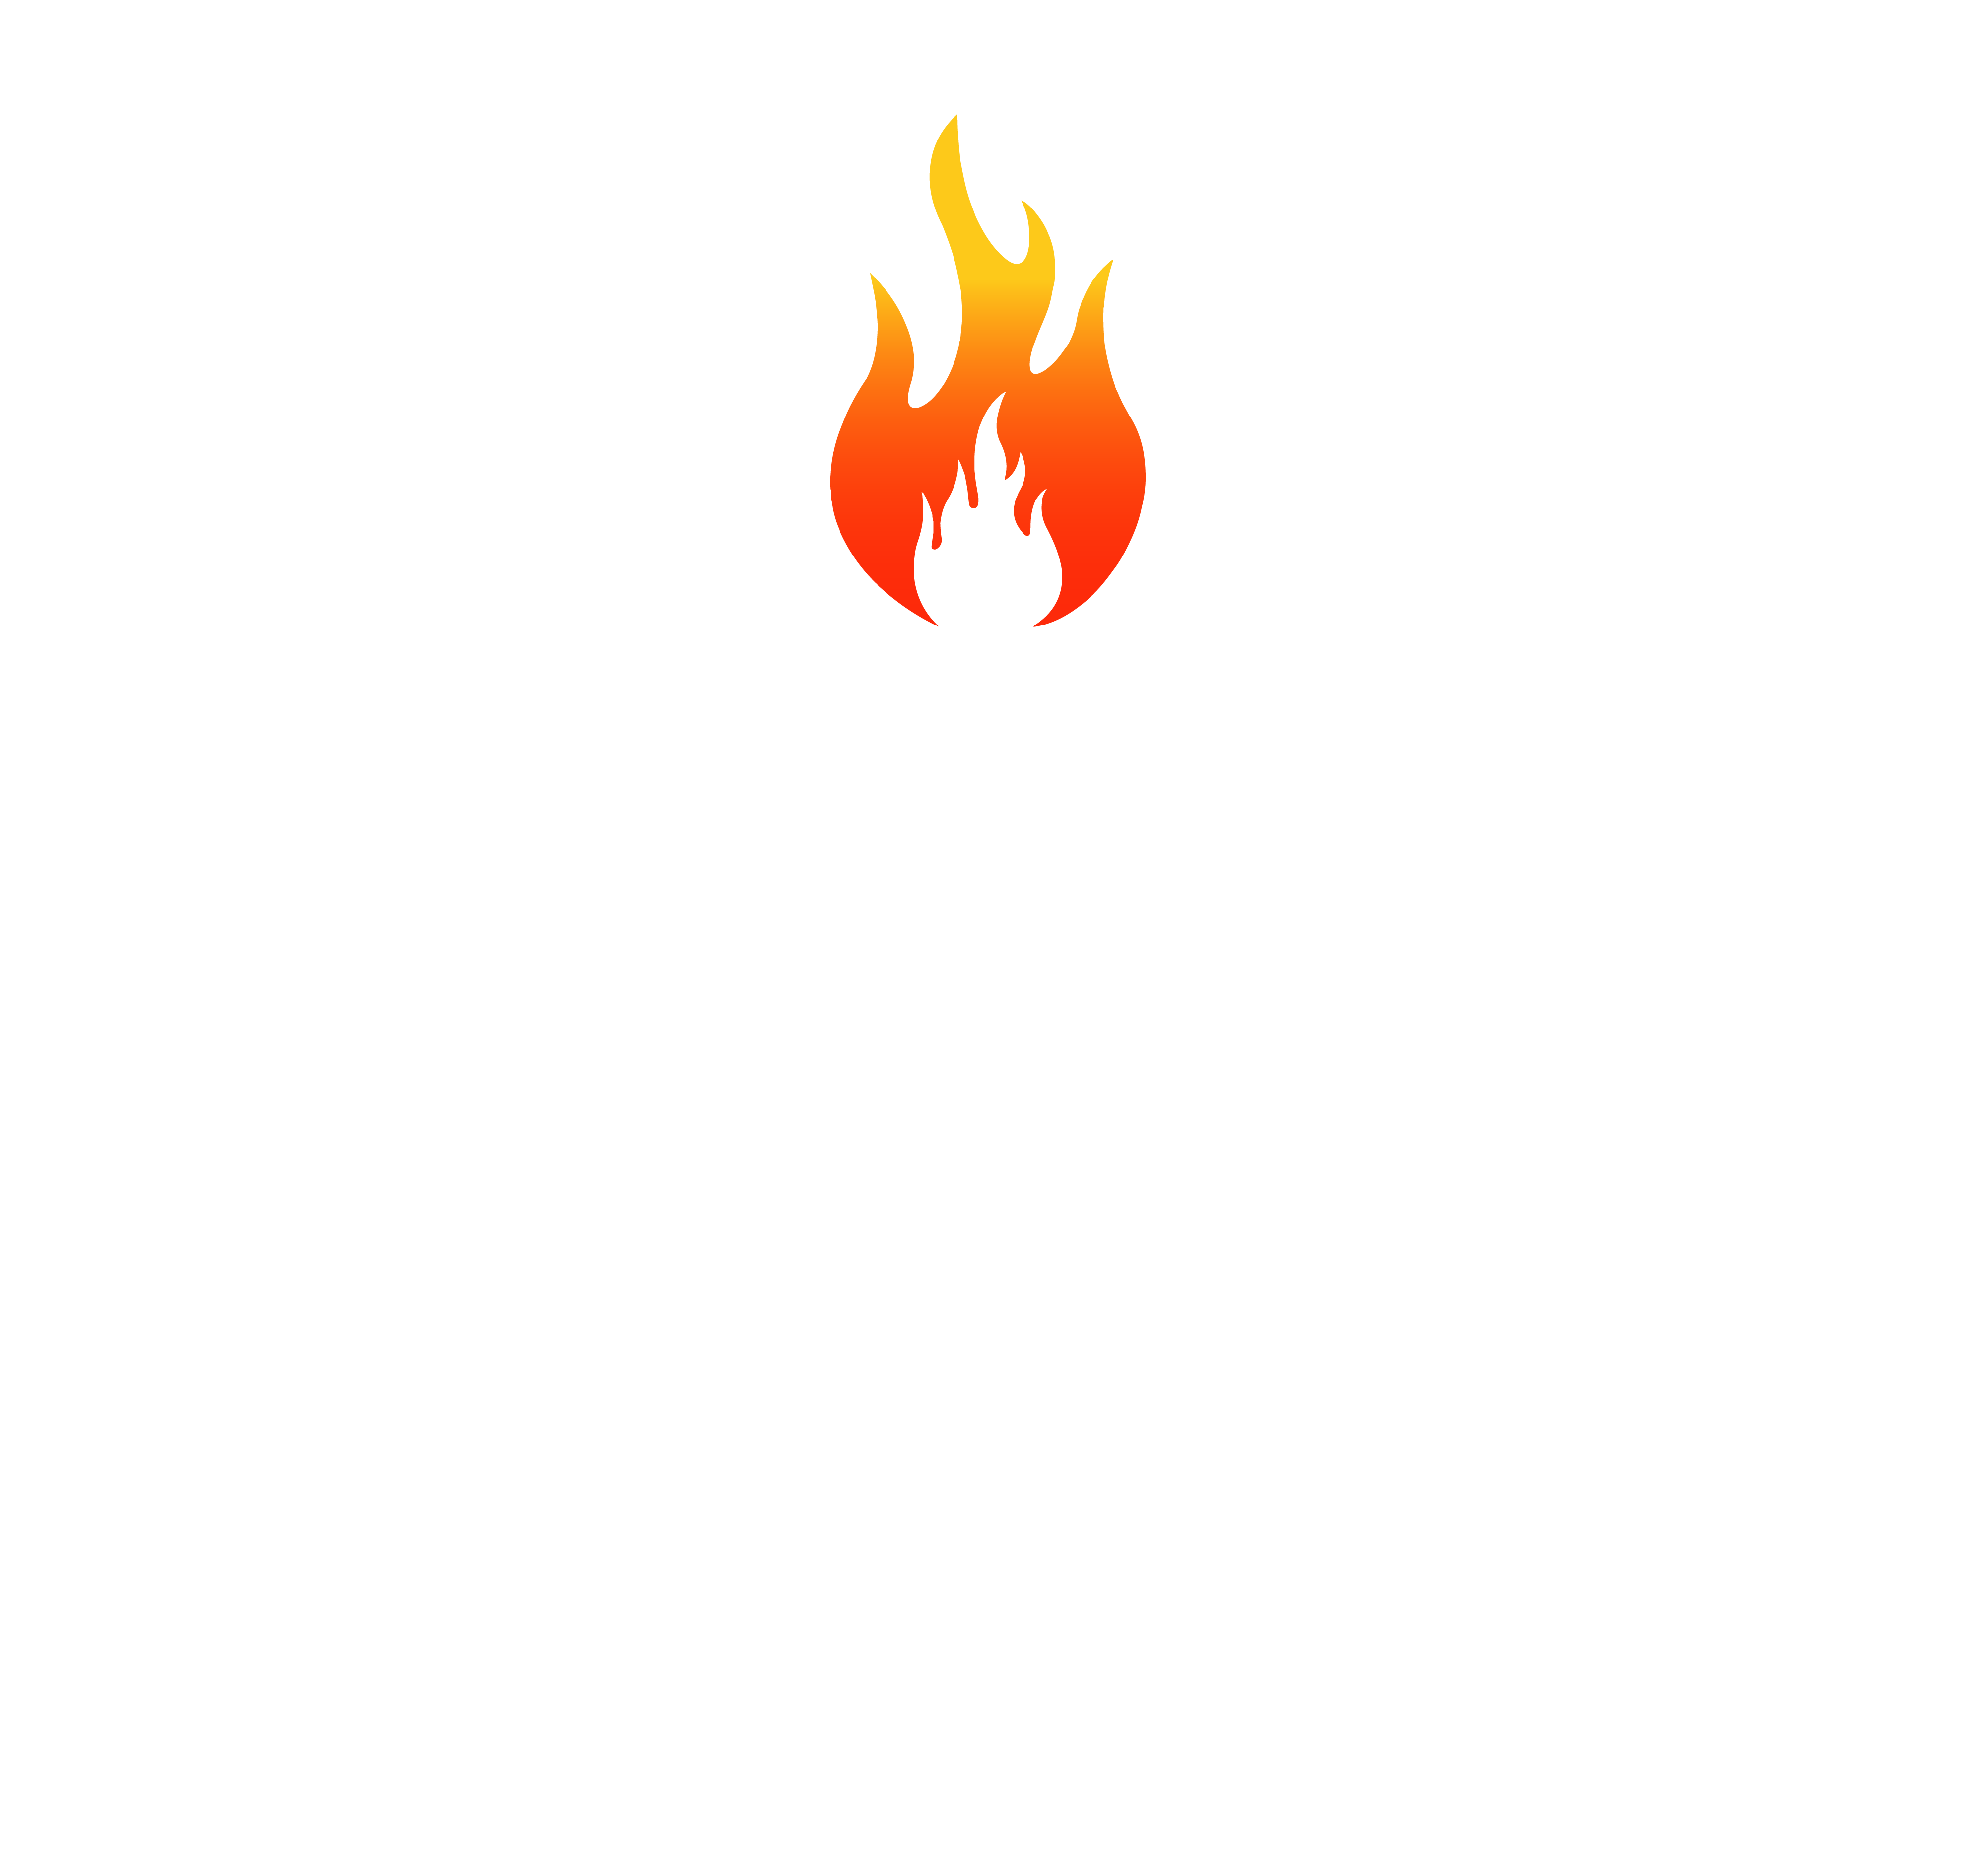 Woodchucks BBQ